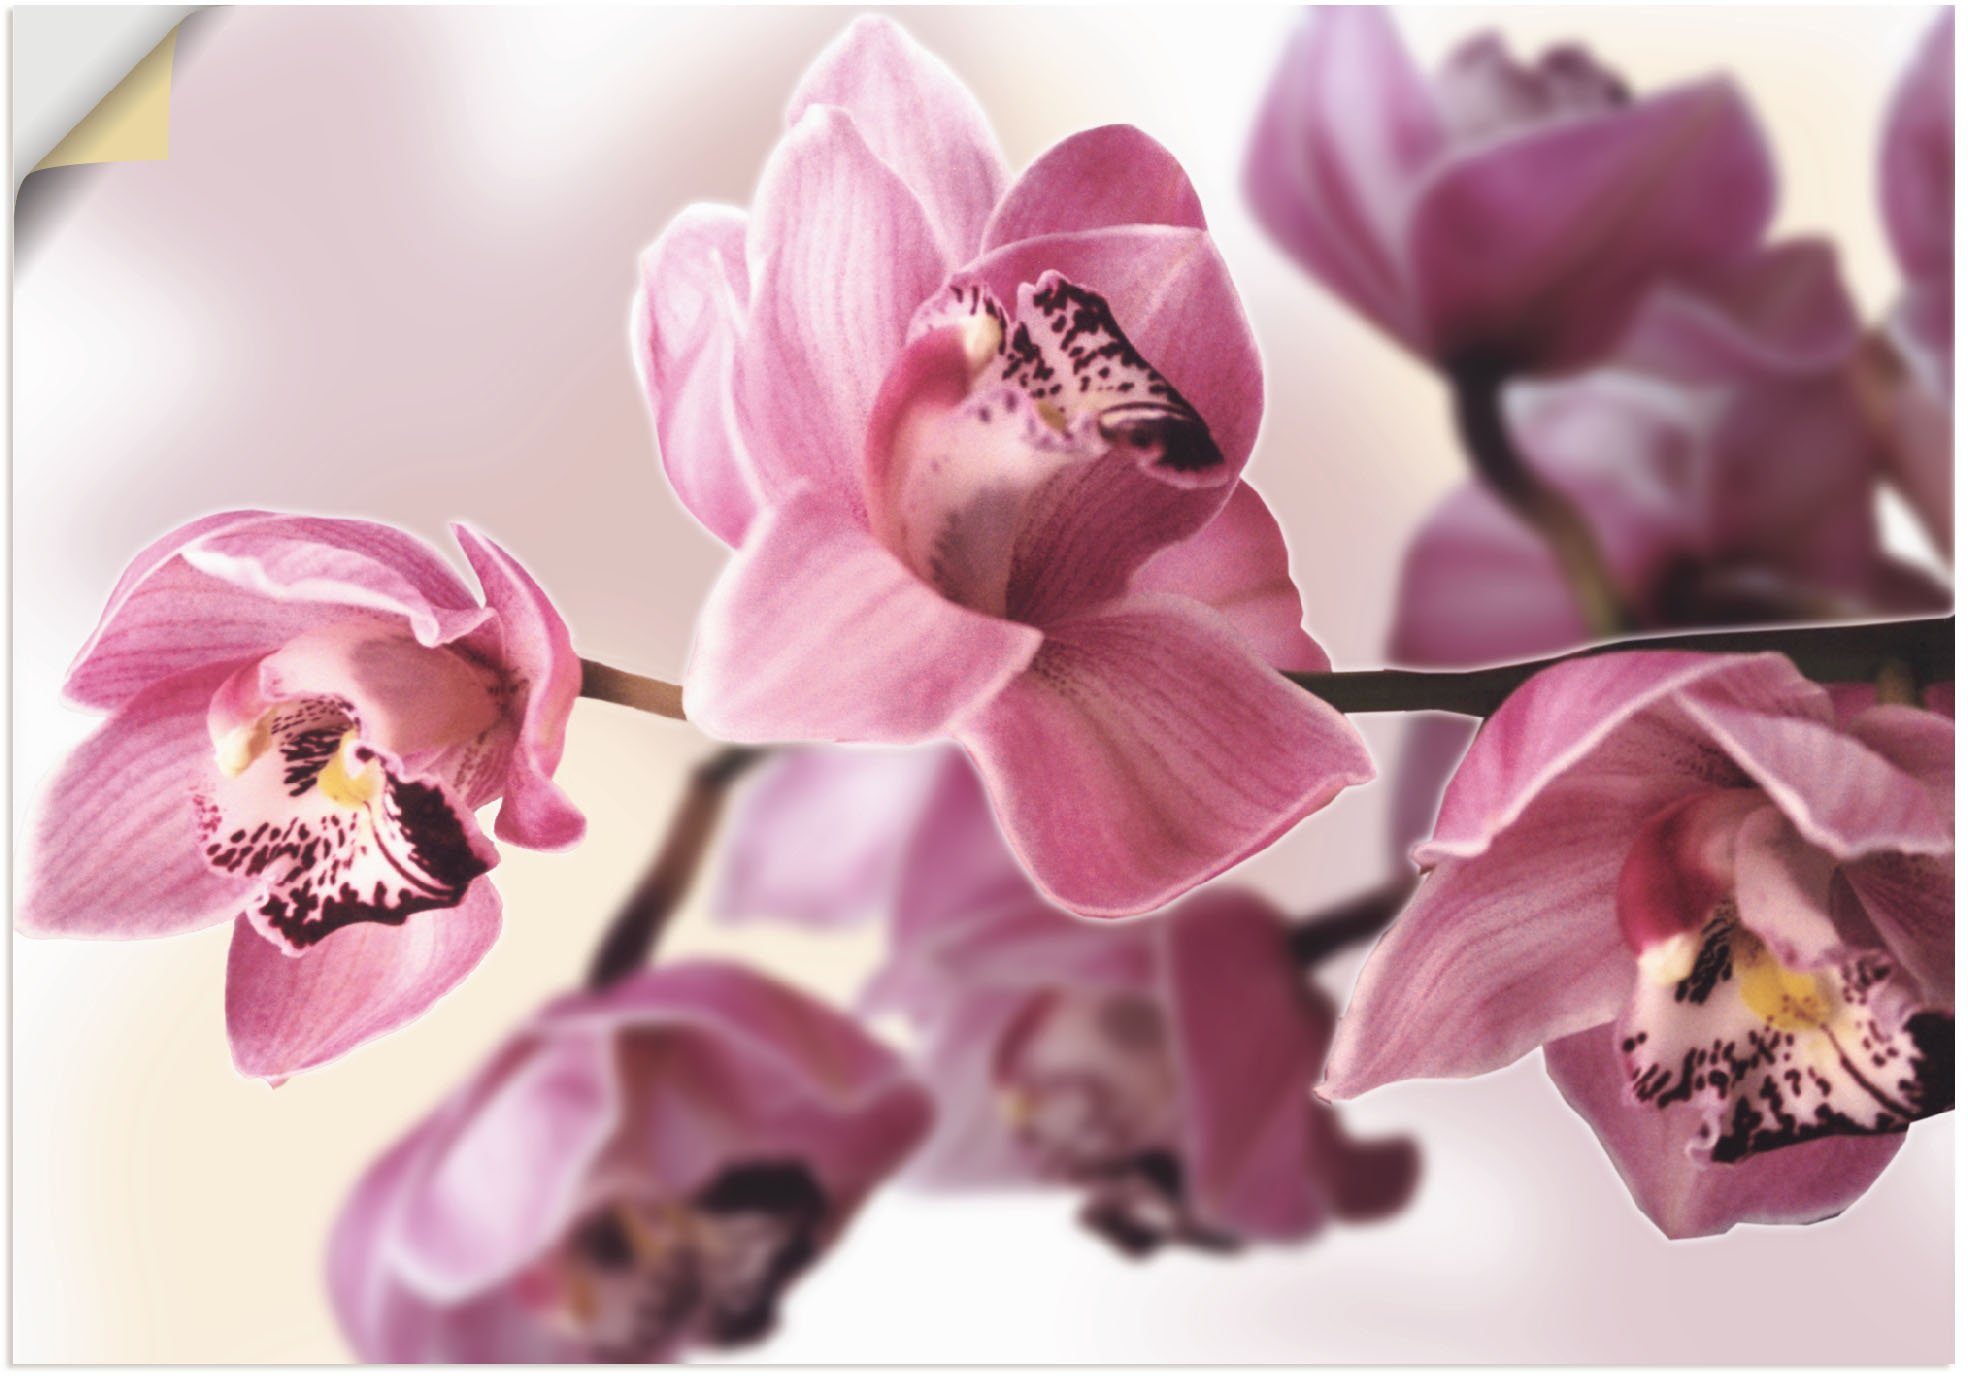 Artland Artprint Roze orchidee in vele afmetingen & productsoorten - artprint van aluminium / artprint voor buiten, artprint op linnen, poster, muursticker / wandfolie ook geschikt